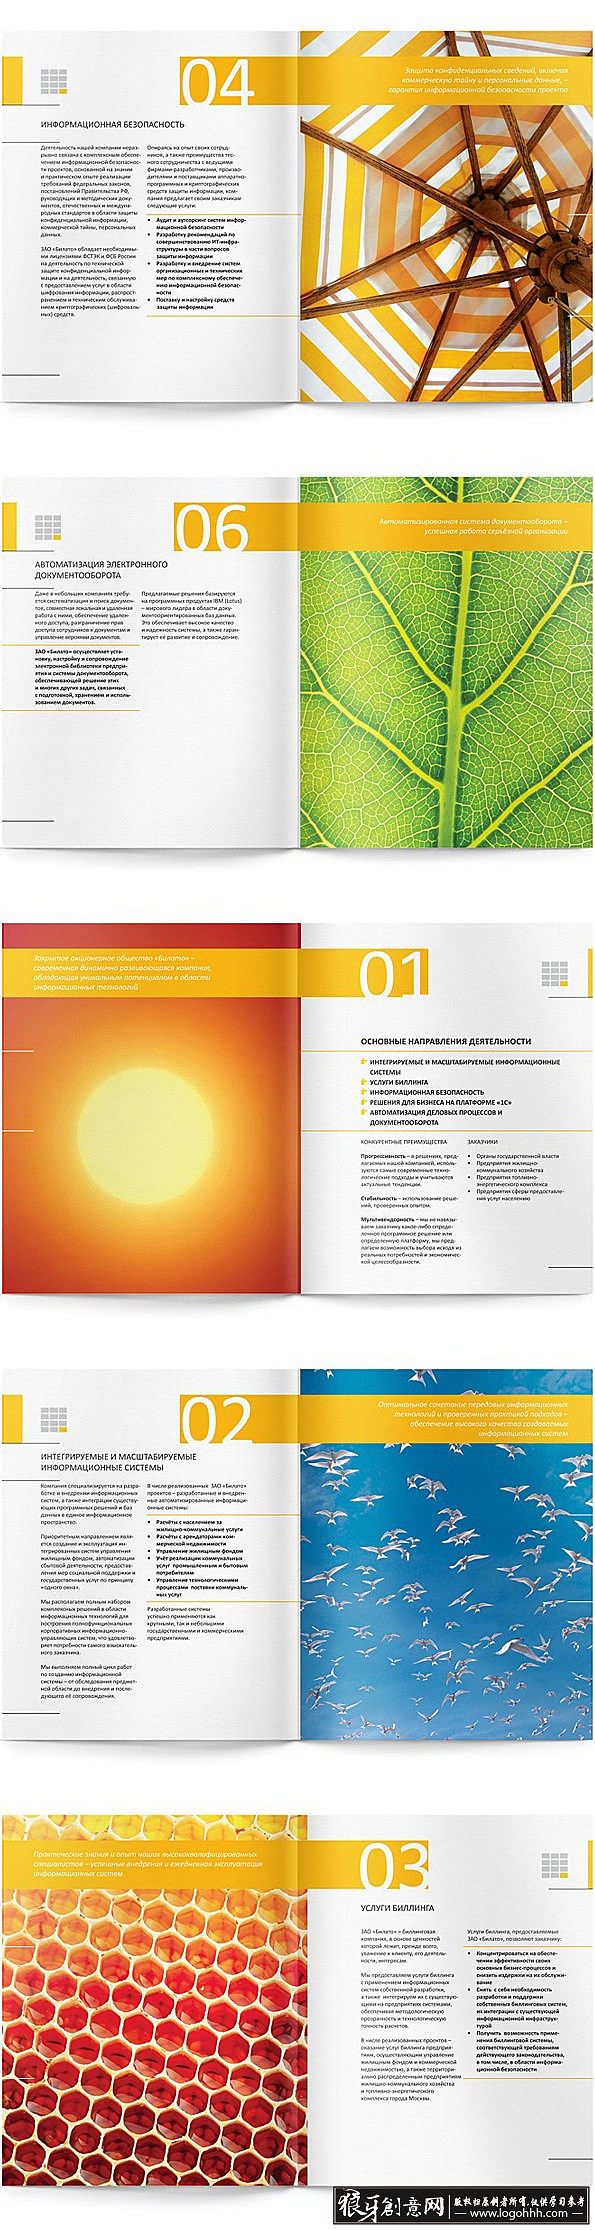 西安宣传画册印刷|西安企业宣传画册设计-传单设计-企业标志设计-画册封面设计印刷